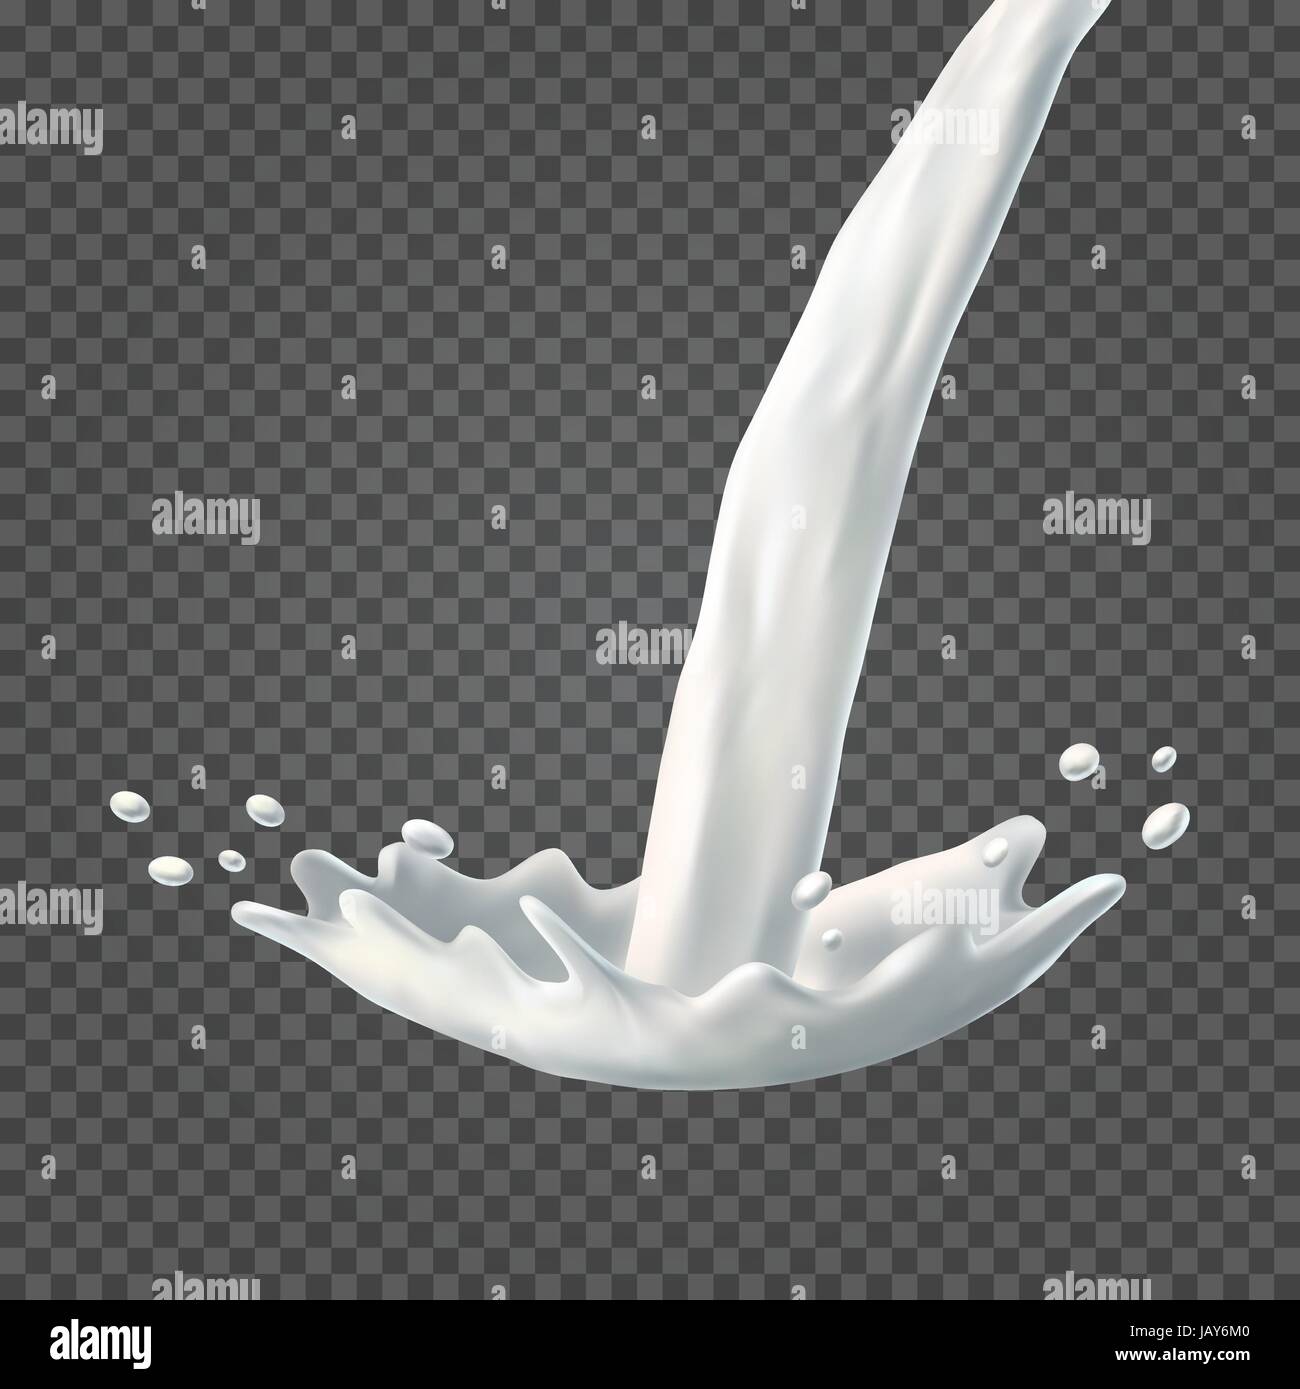 Premium Photo  Pouring milk or white liquid created splash